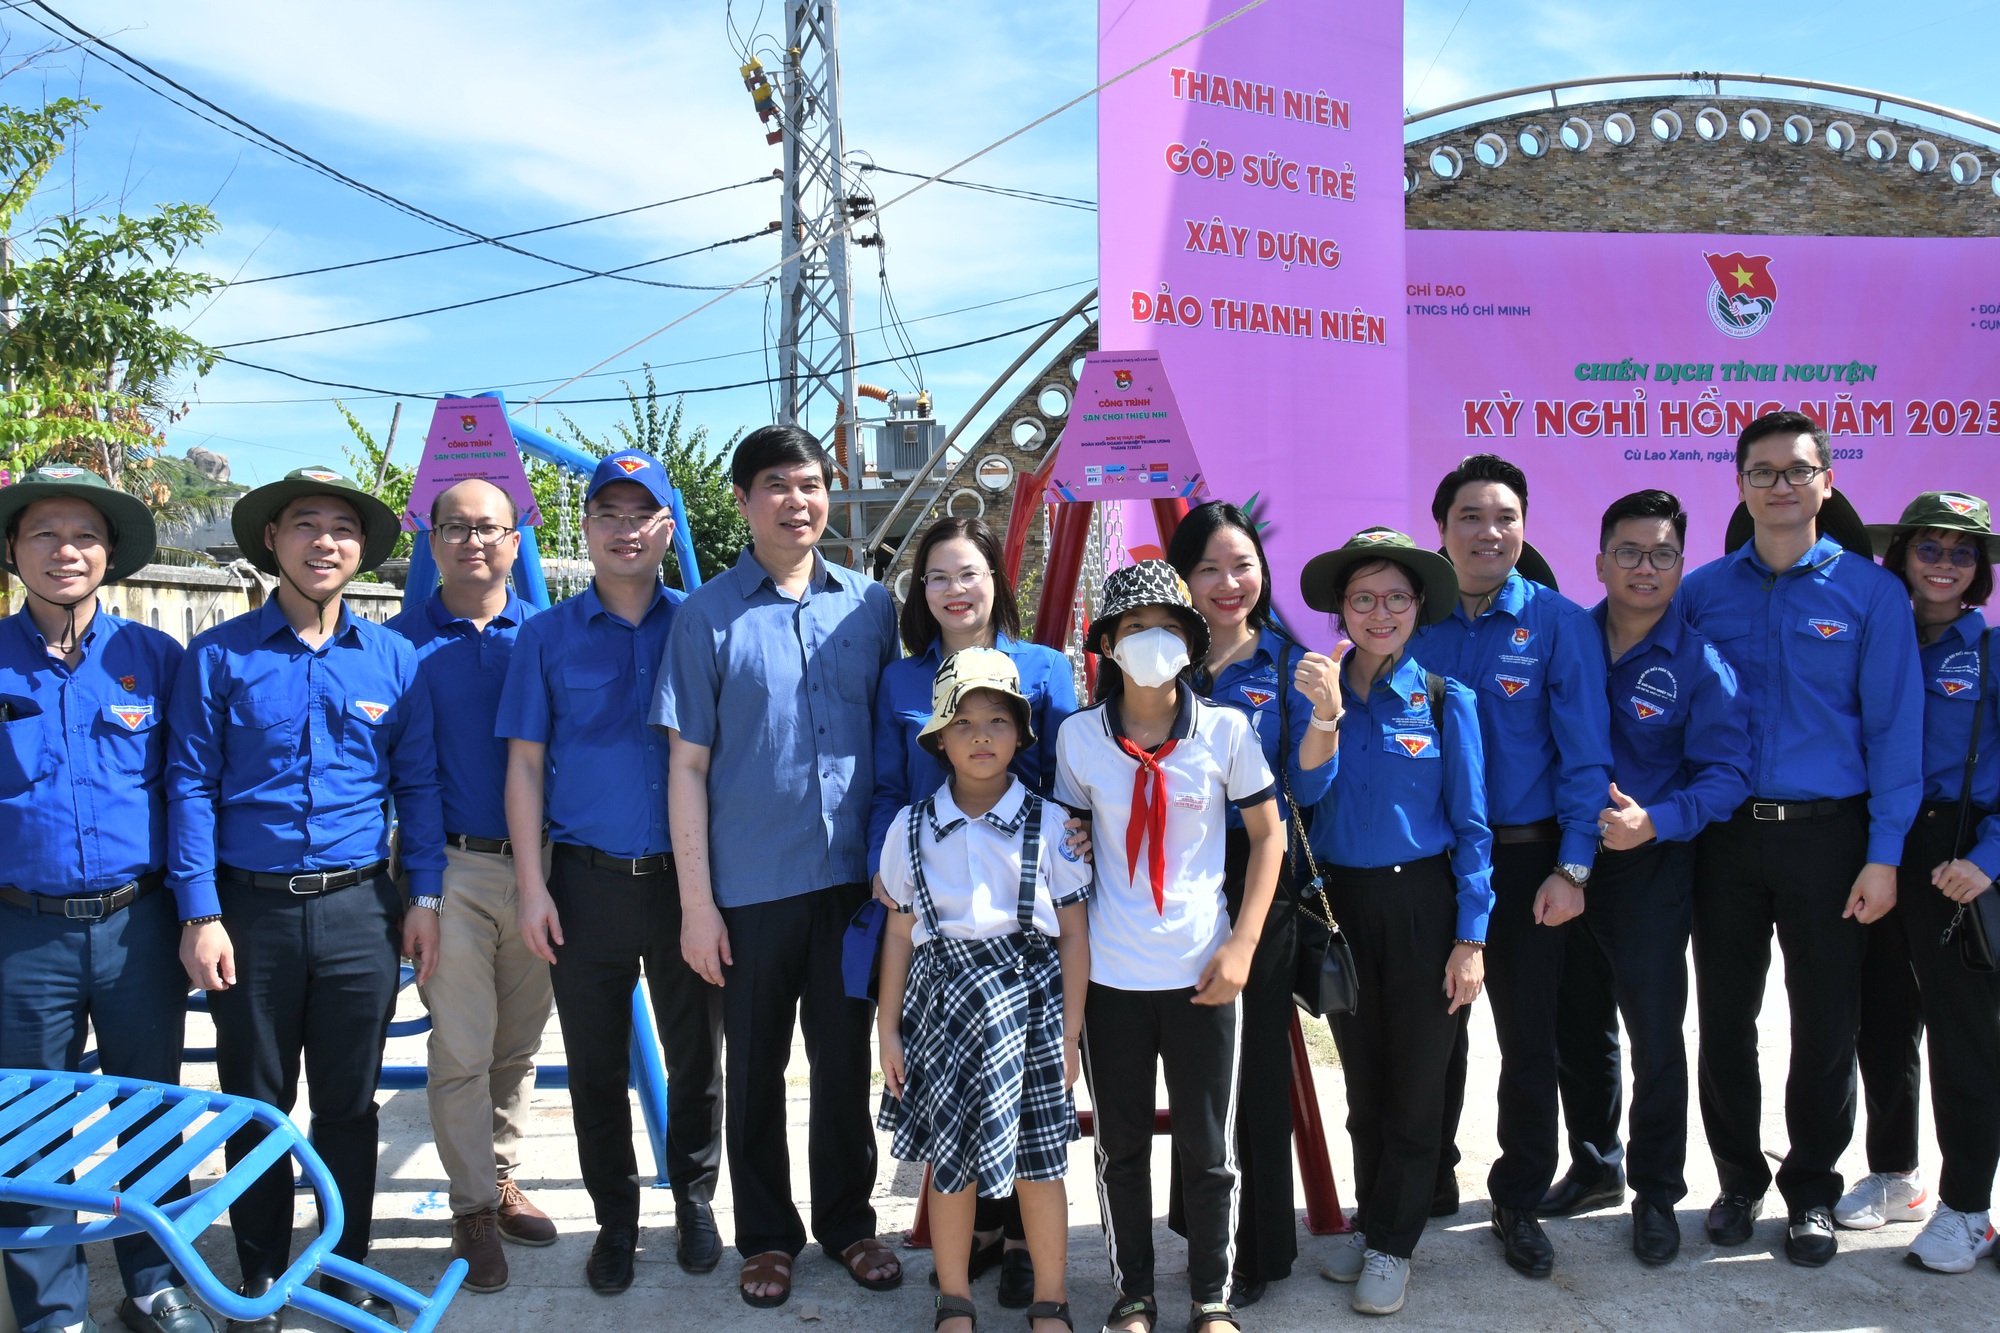 Chiến dịch tình nguyện Kỳ nghỉ hồng ra Đảo Thanh niên Cù Lao Xanh - Ảnh 9.